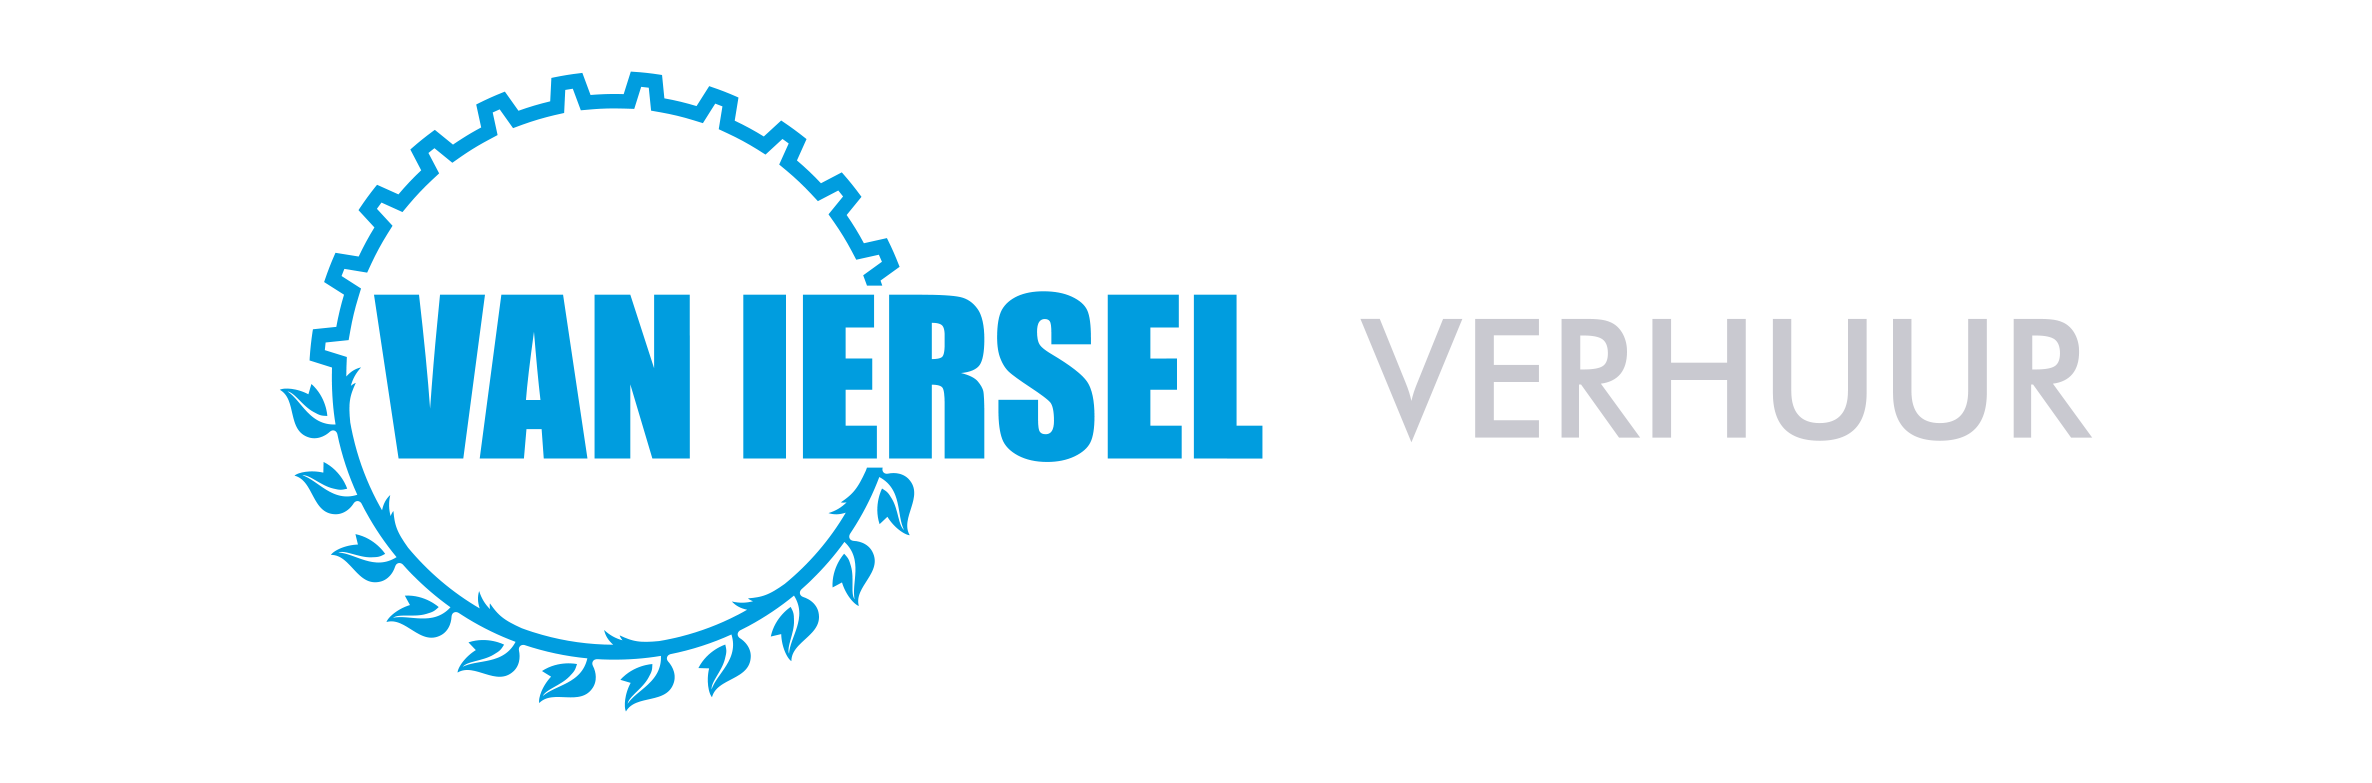 Van Iersel Verhuur  Logo